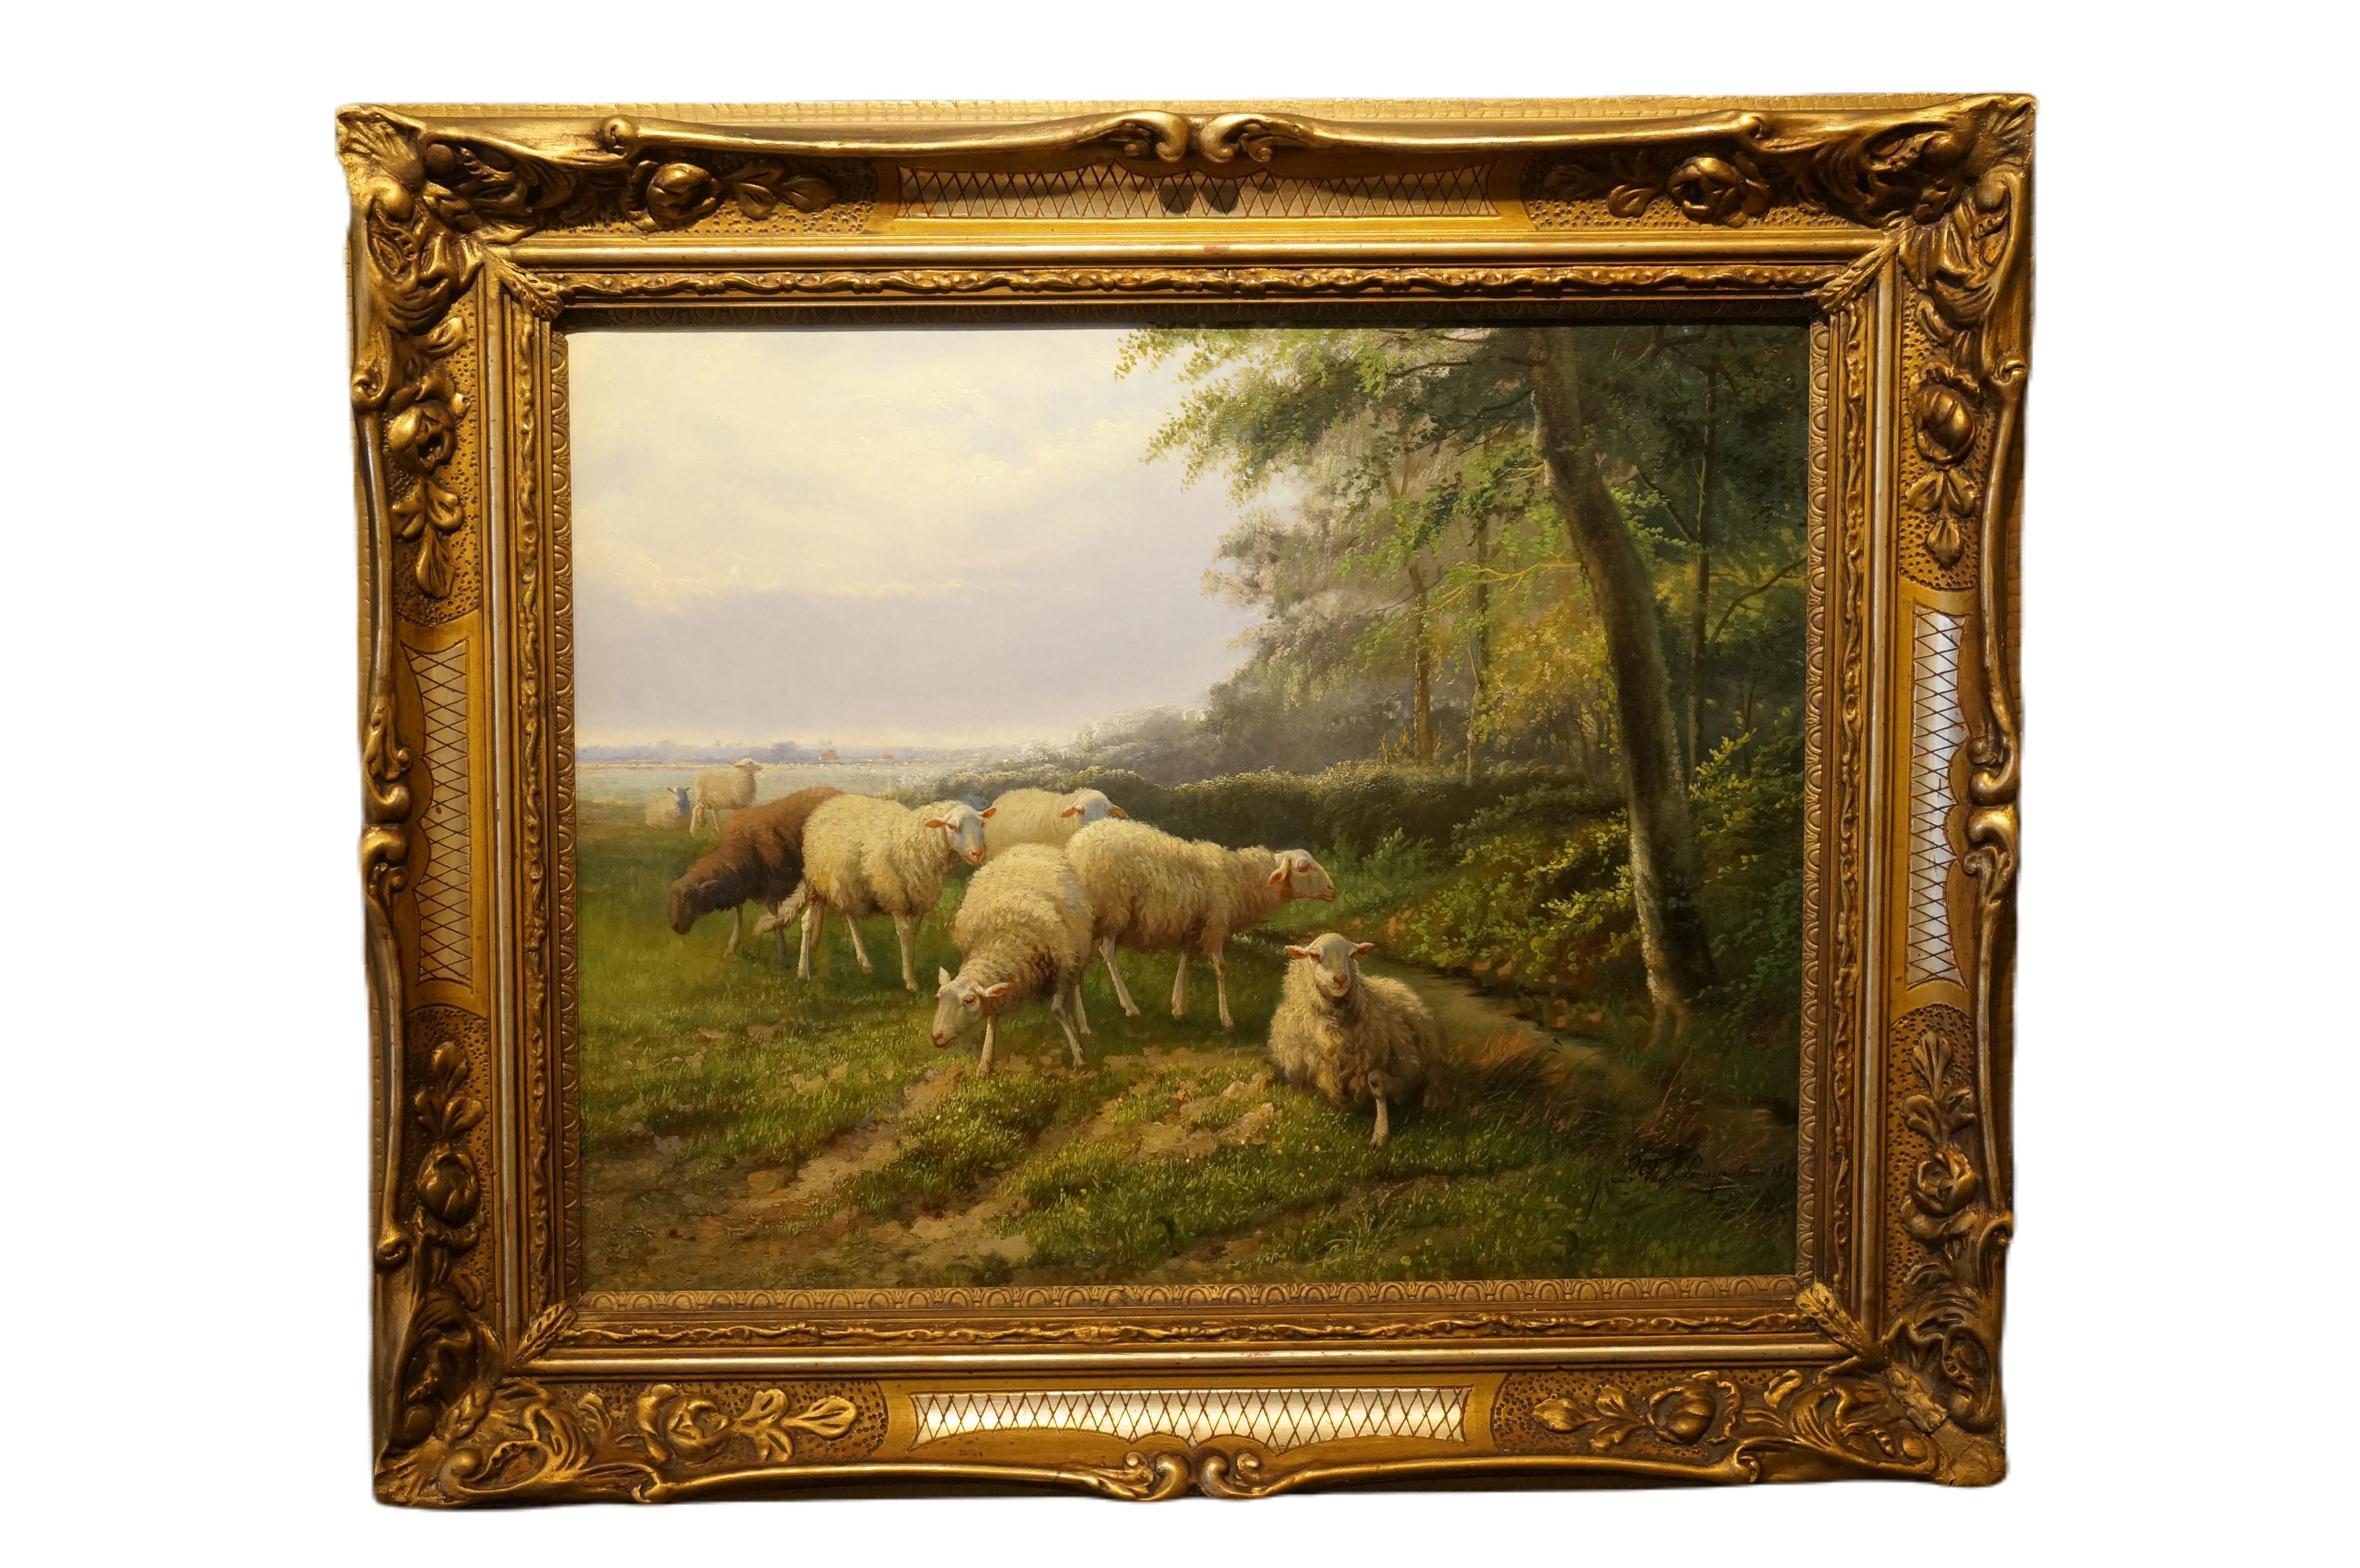 Landschaft mit Schafsfisch, romantisches Ölgemälde auf Leinwand, Belgien, 1890 – Painting von Jef Louis van Leemputten